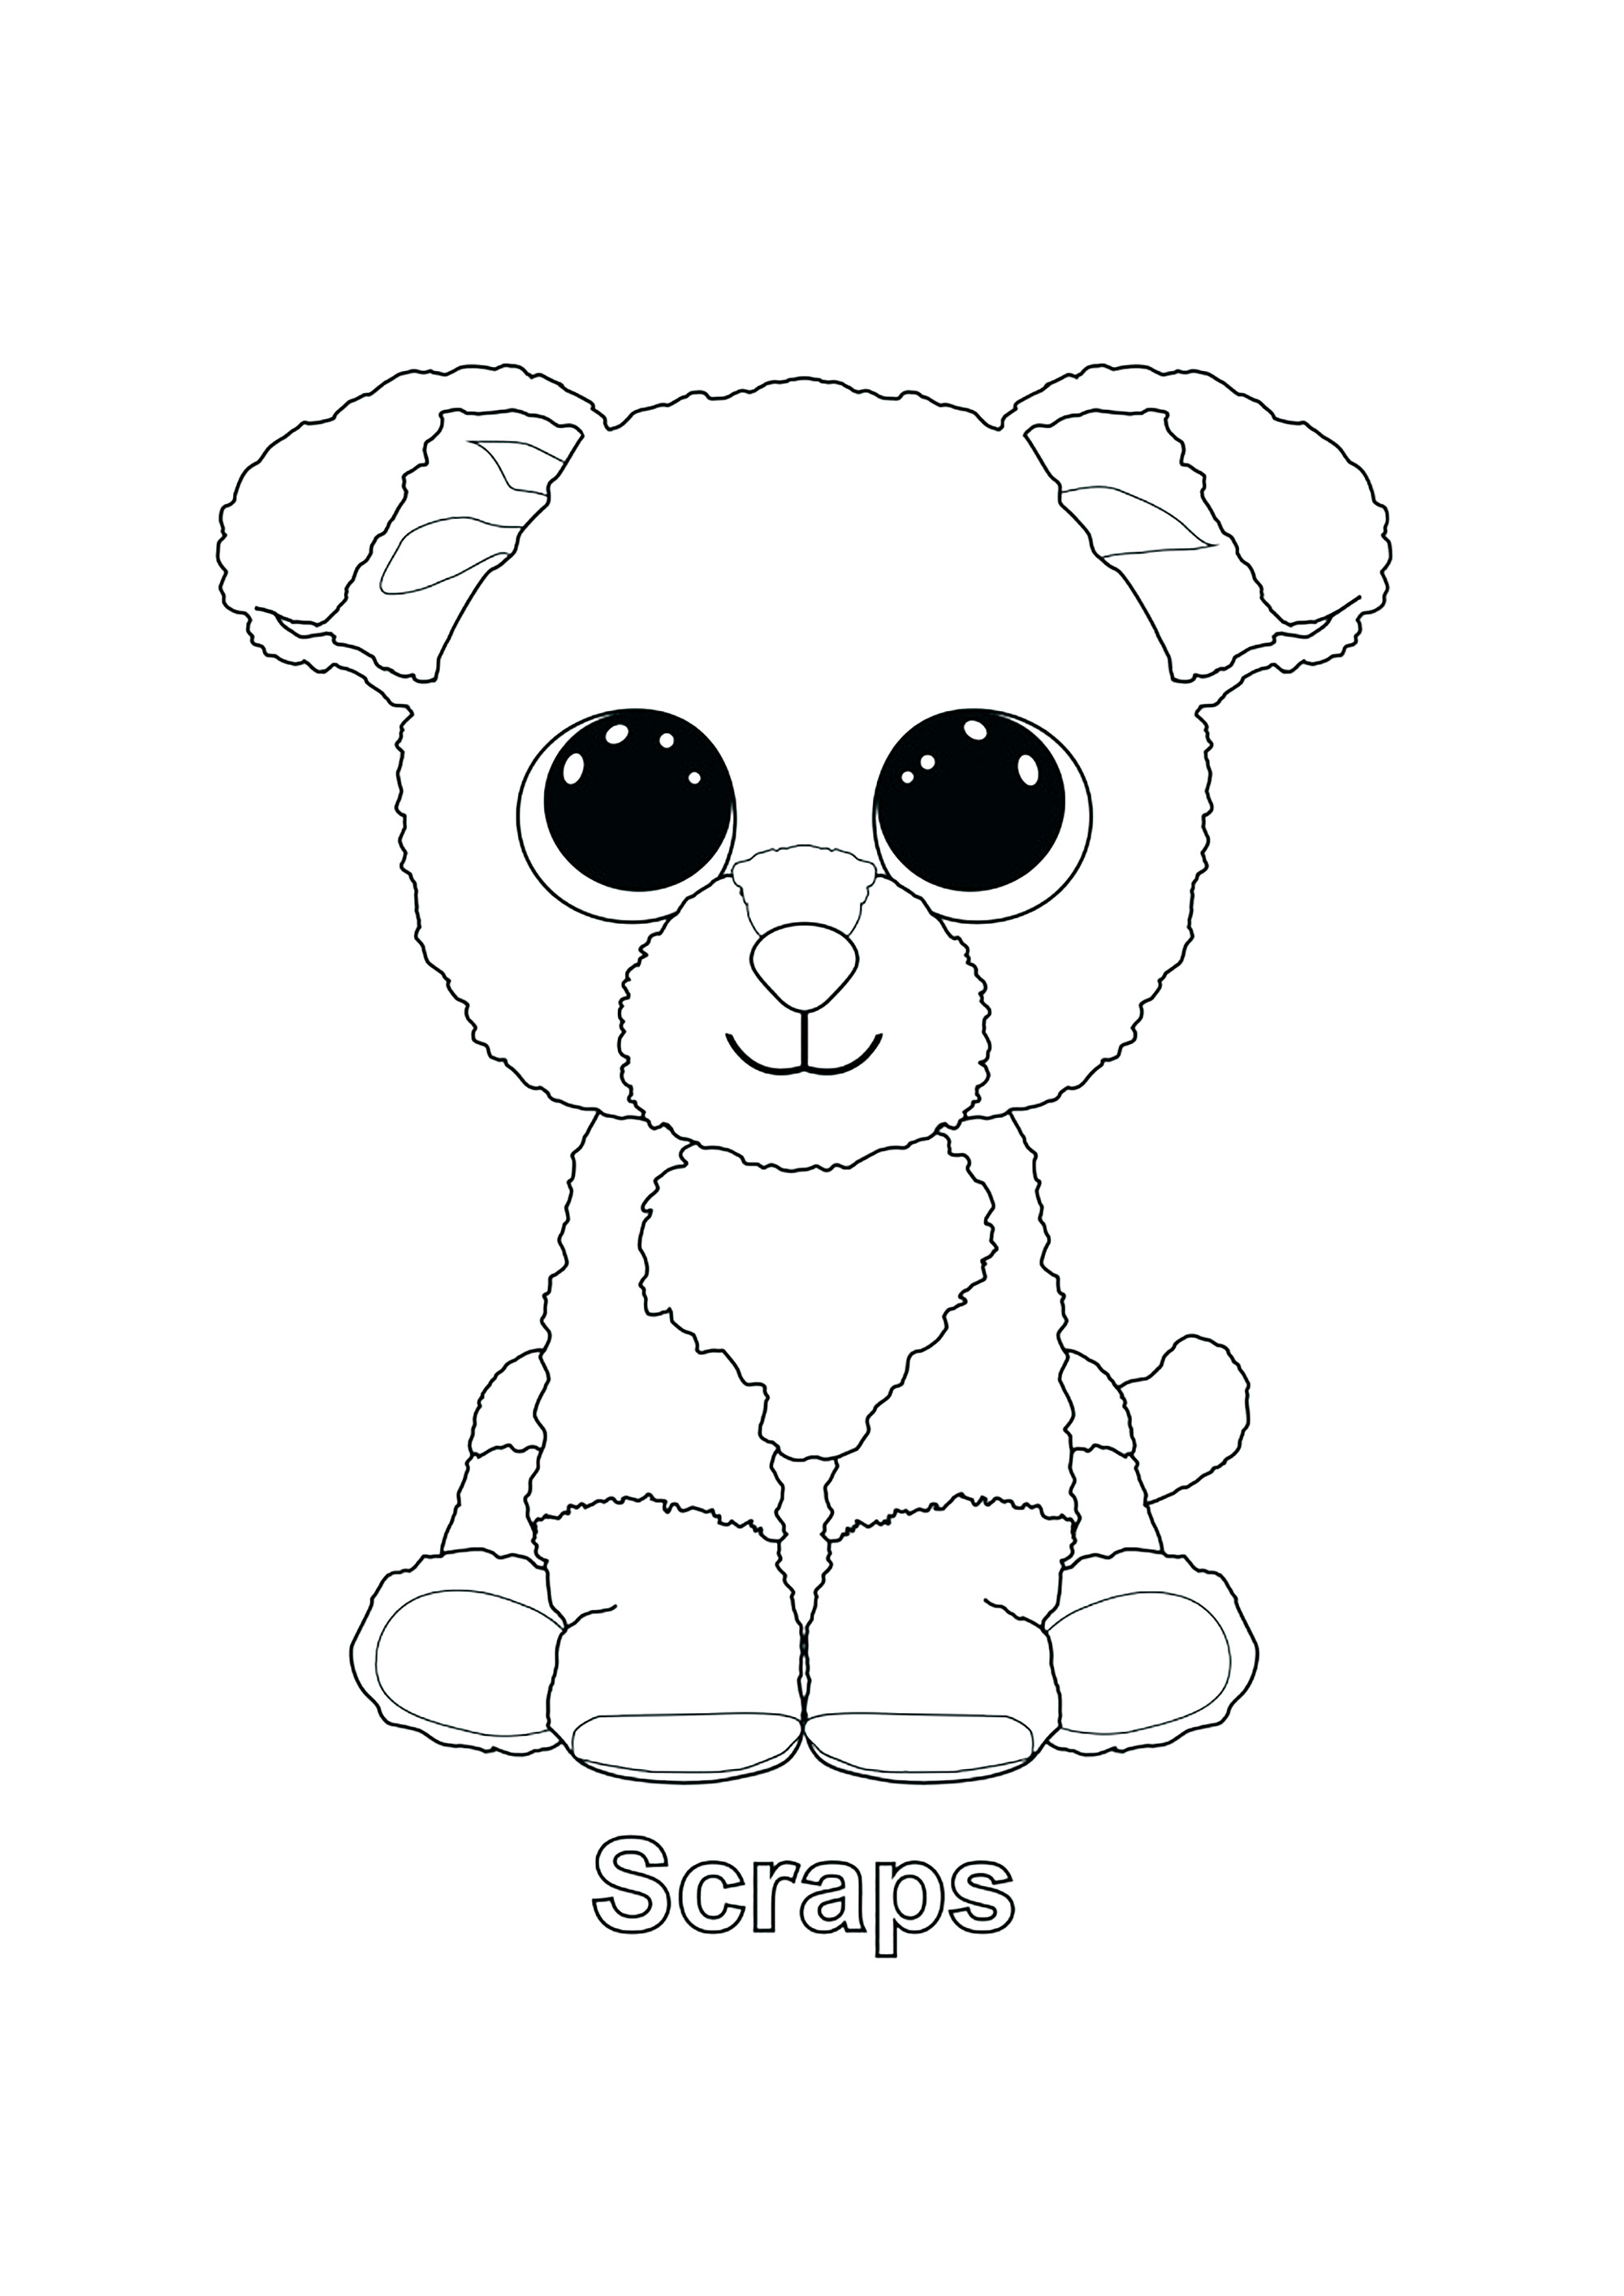 Scraps (Dog)